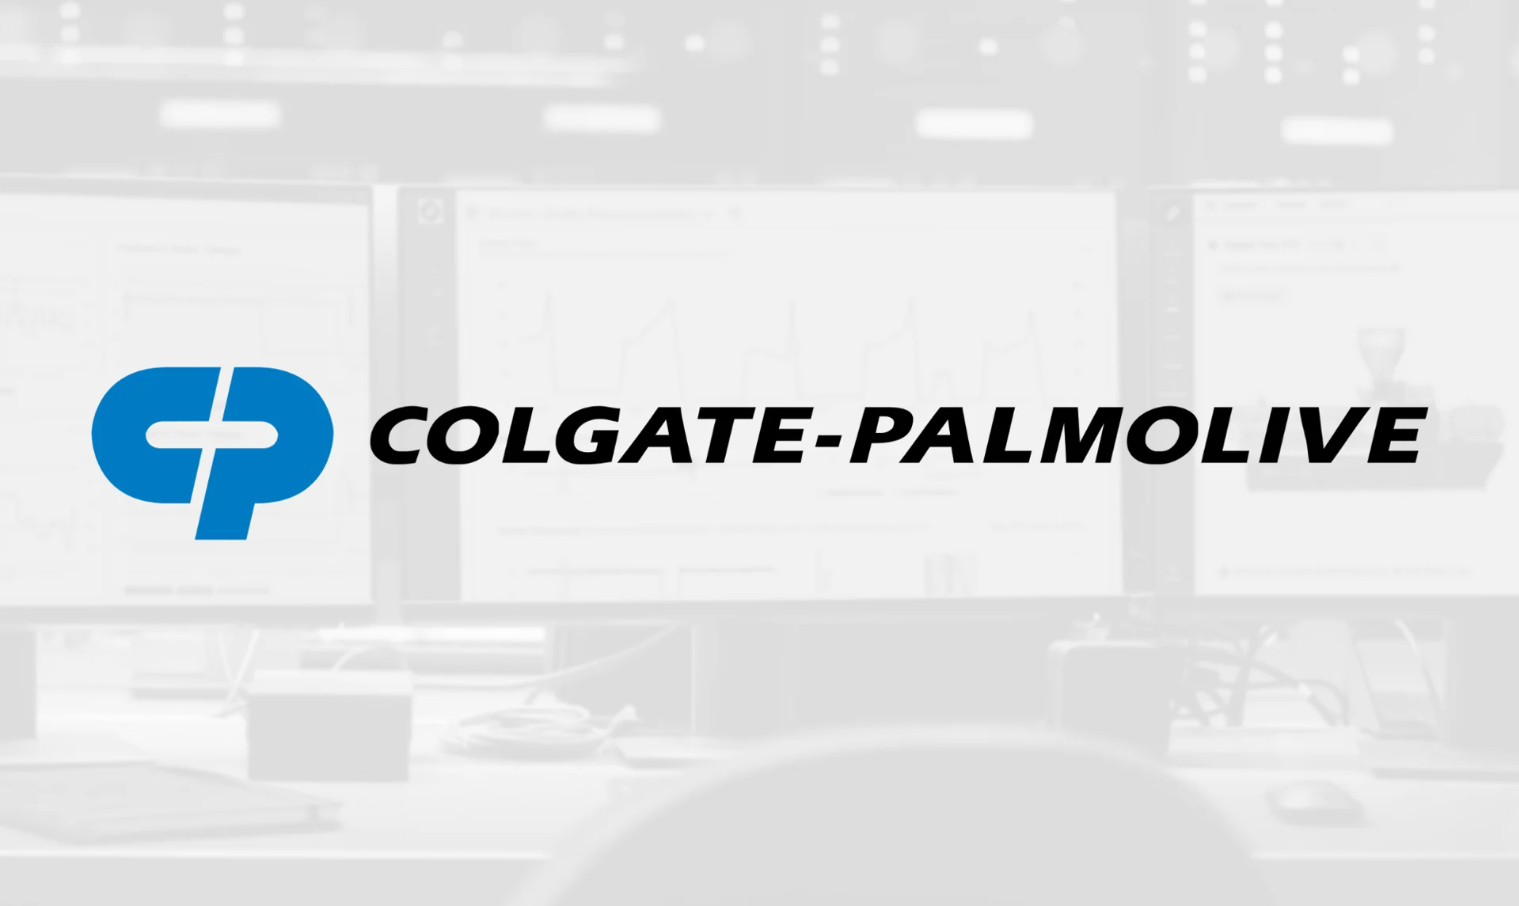 Colgate-Palmolive: "Cổ phiếu sáng giá" trong nhóm hàng tiêu dùng thiết yếu